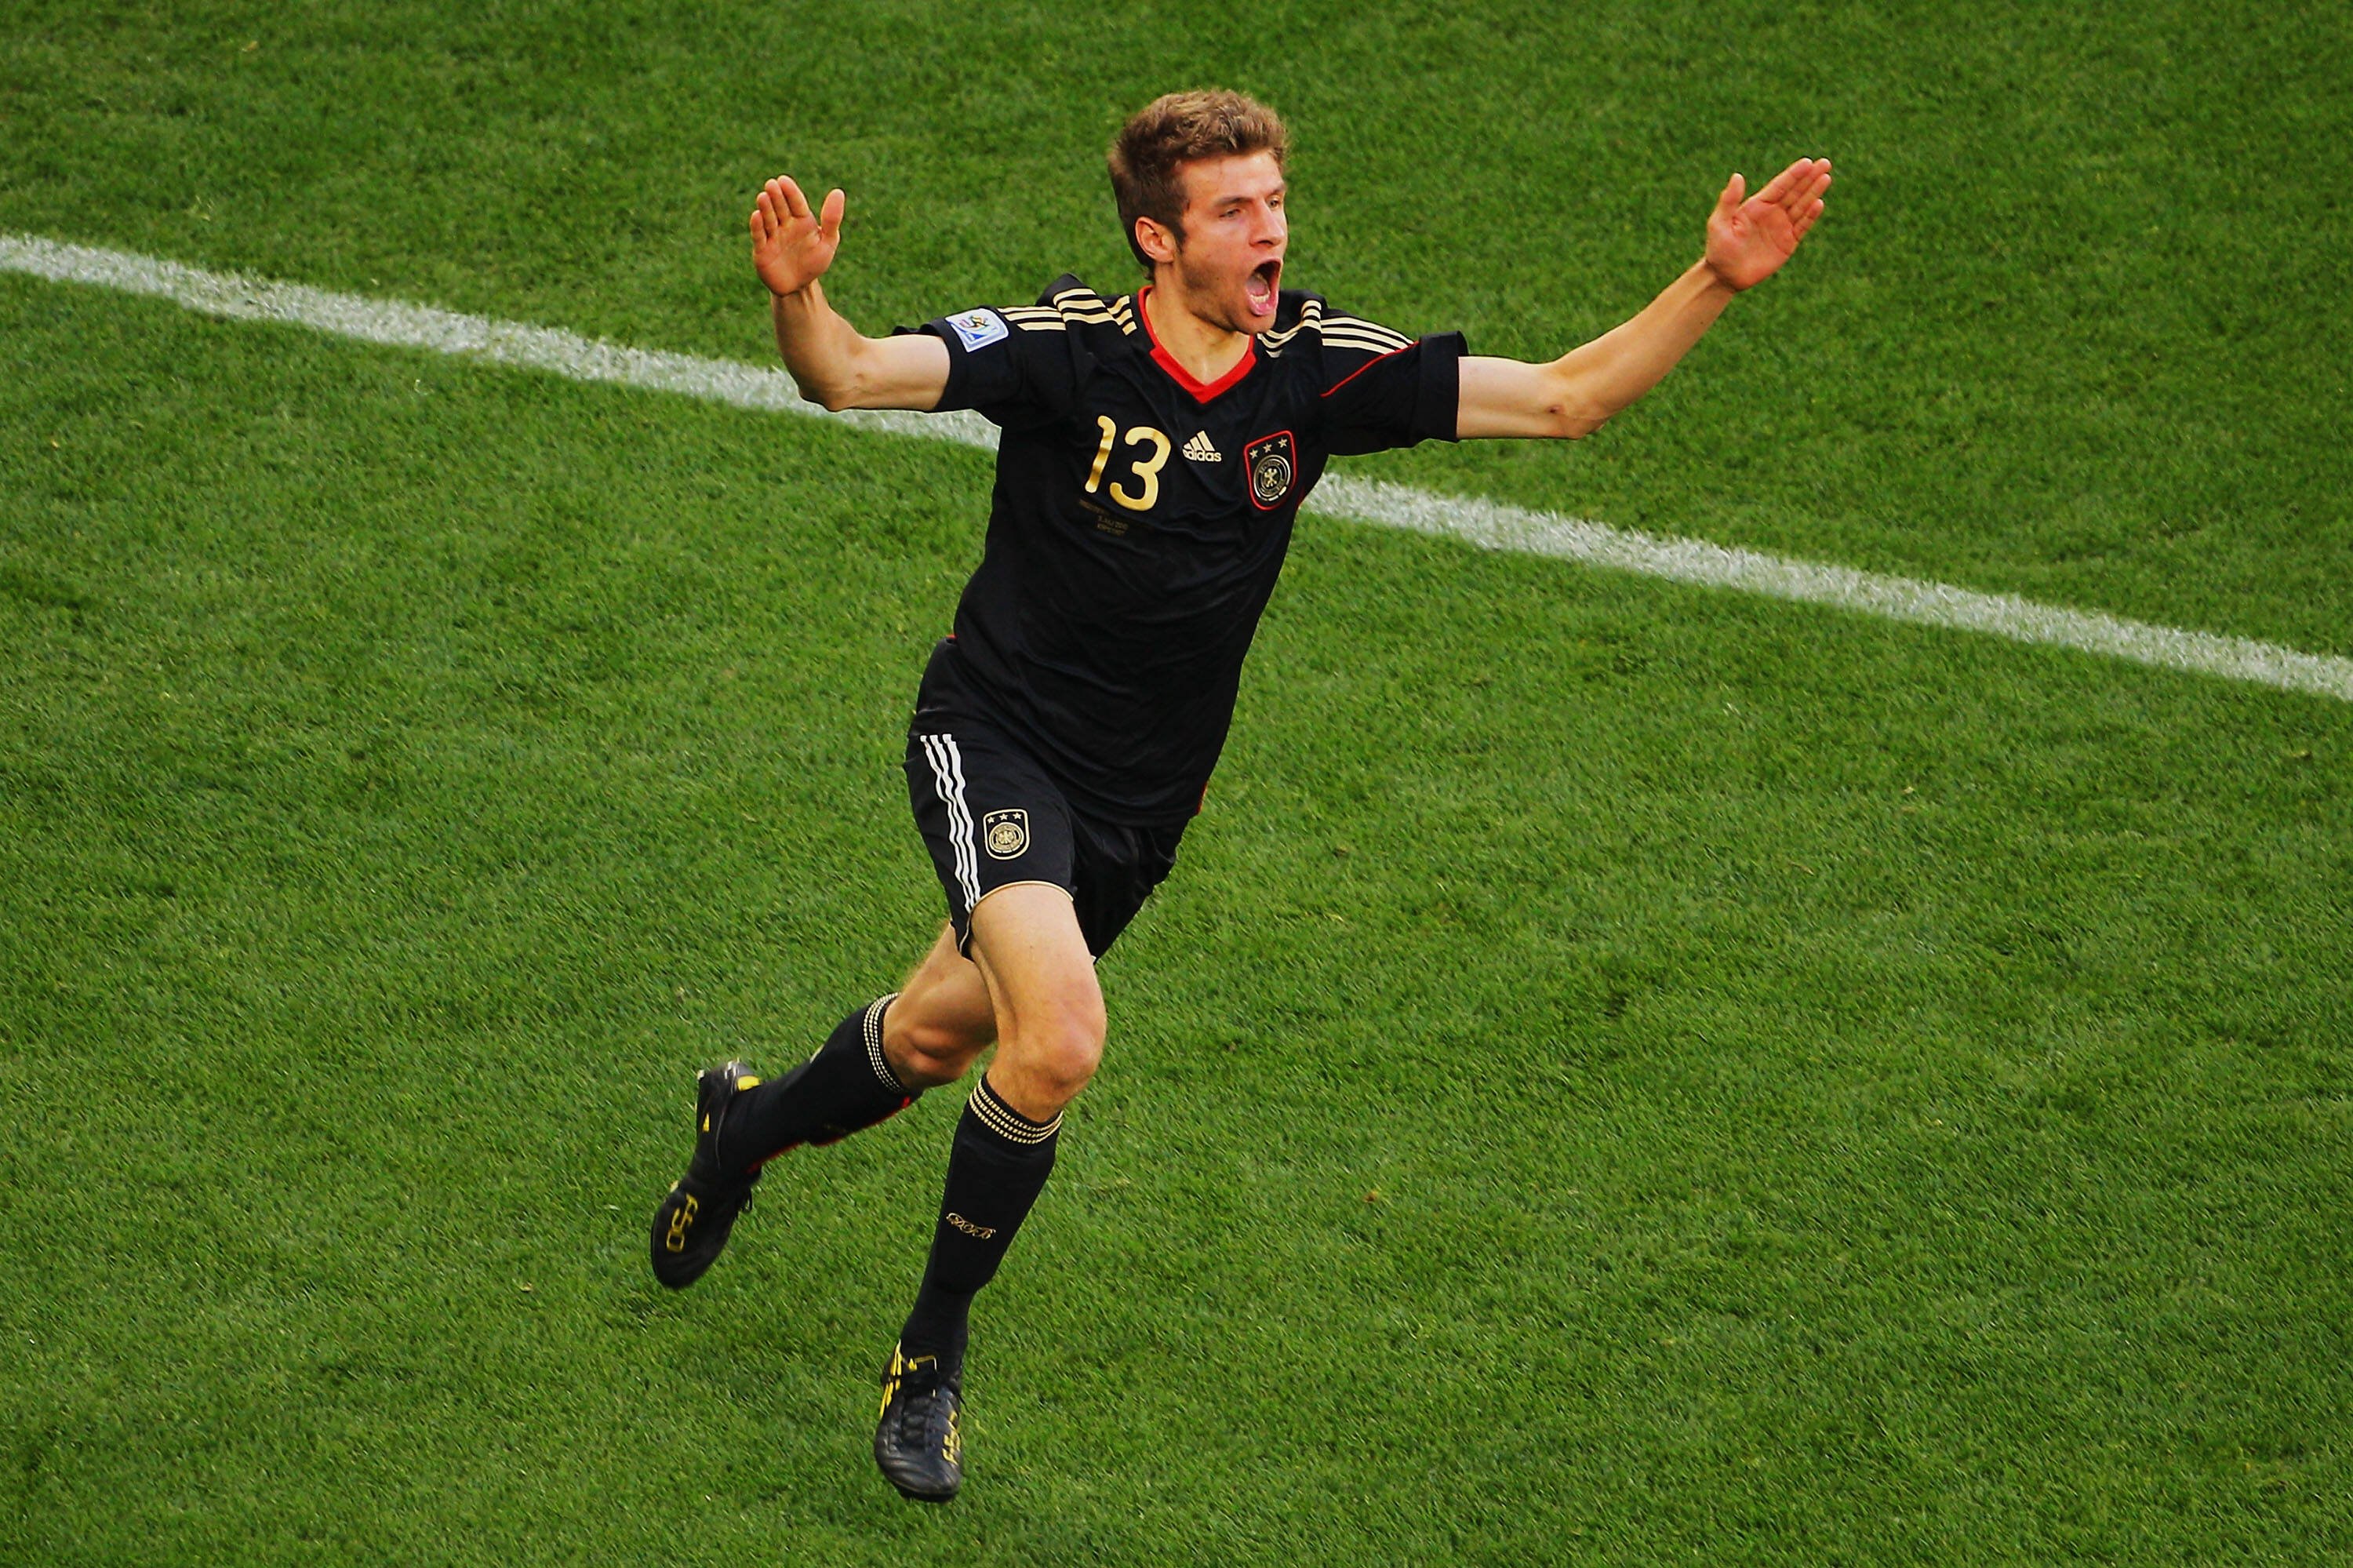 Em homenagem ao ídolo Gerd Müller, Thomas Müller usa a 13 na seleção alemã Getty Images